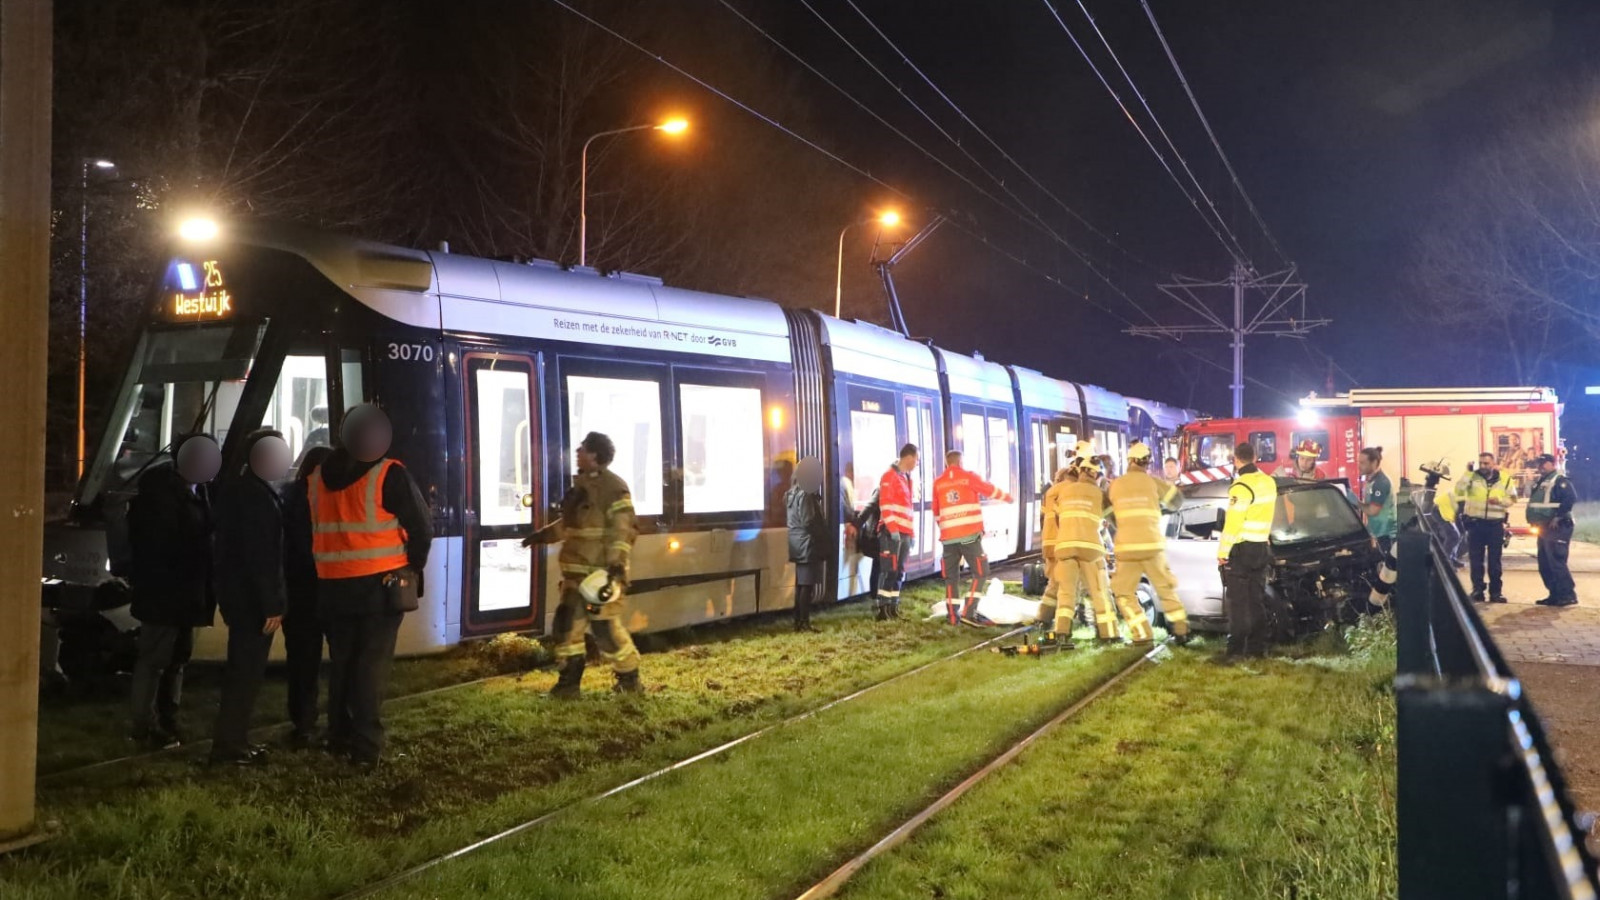 Bestuurder brommobiel ernstig gewond bij aanrijding met tram in Amstelveen